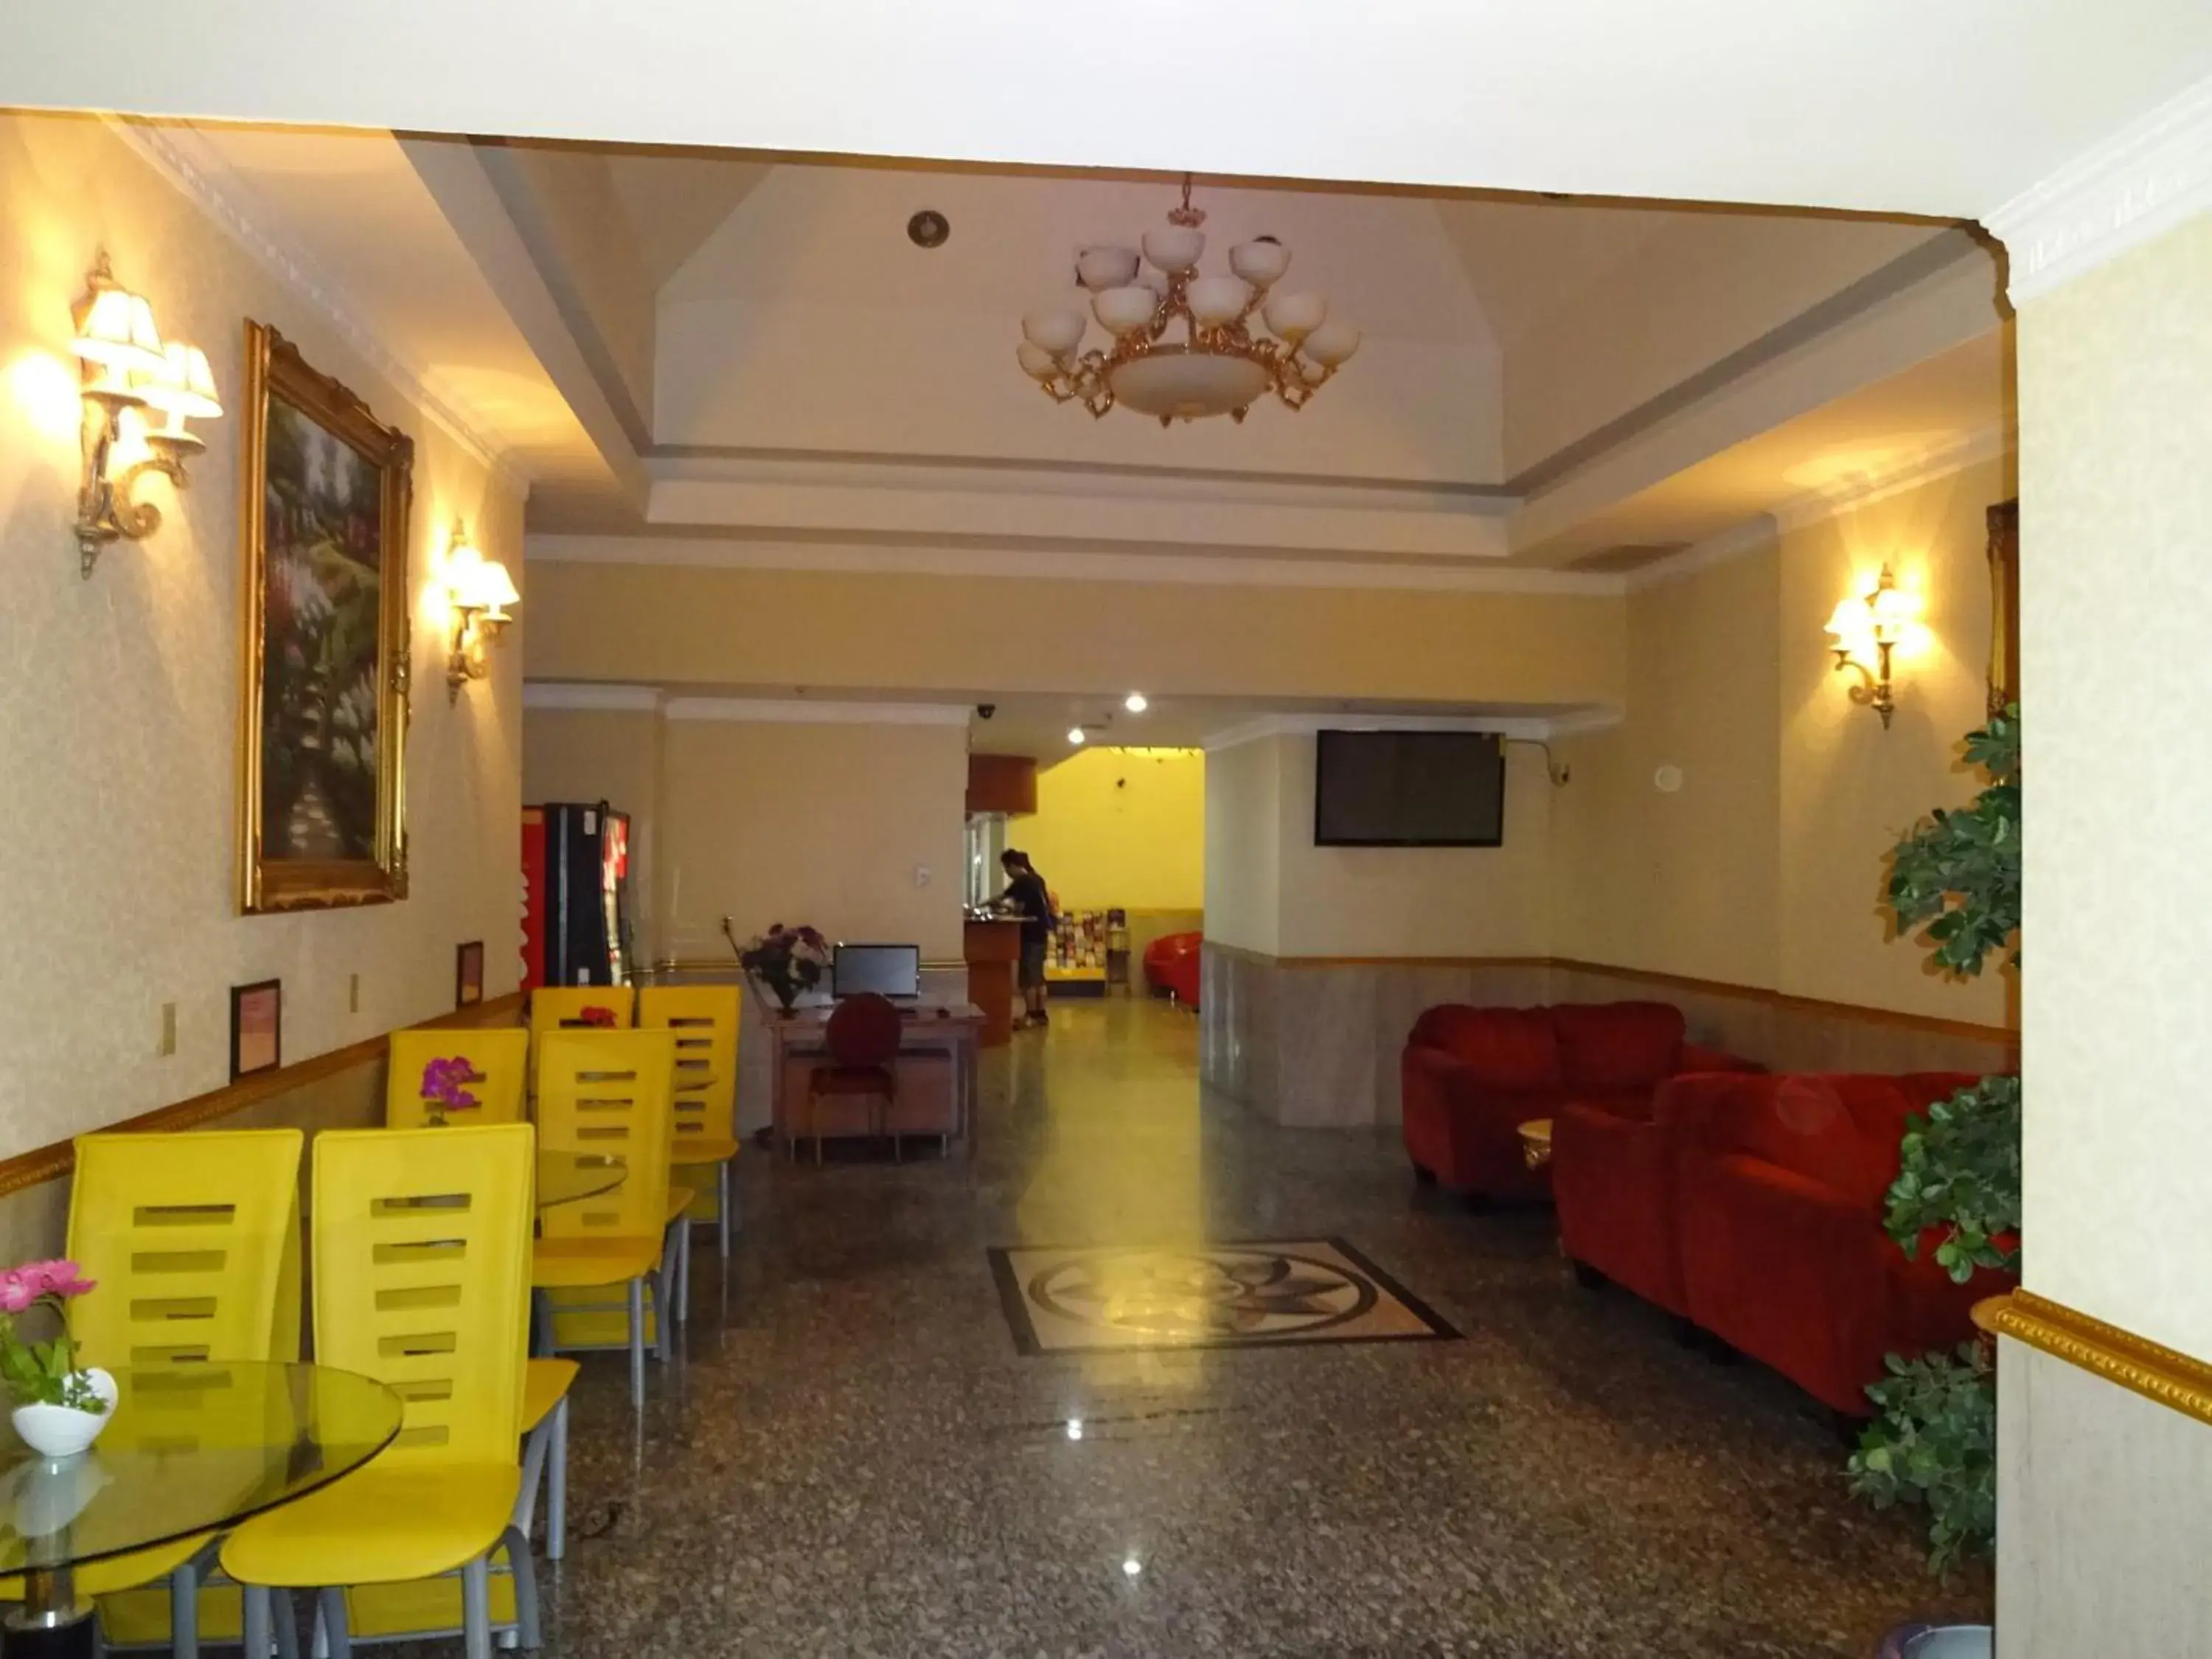 Lobby or reception, Lobby/Reception in Flushing Hotel